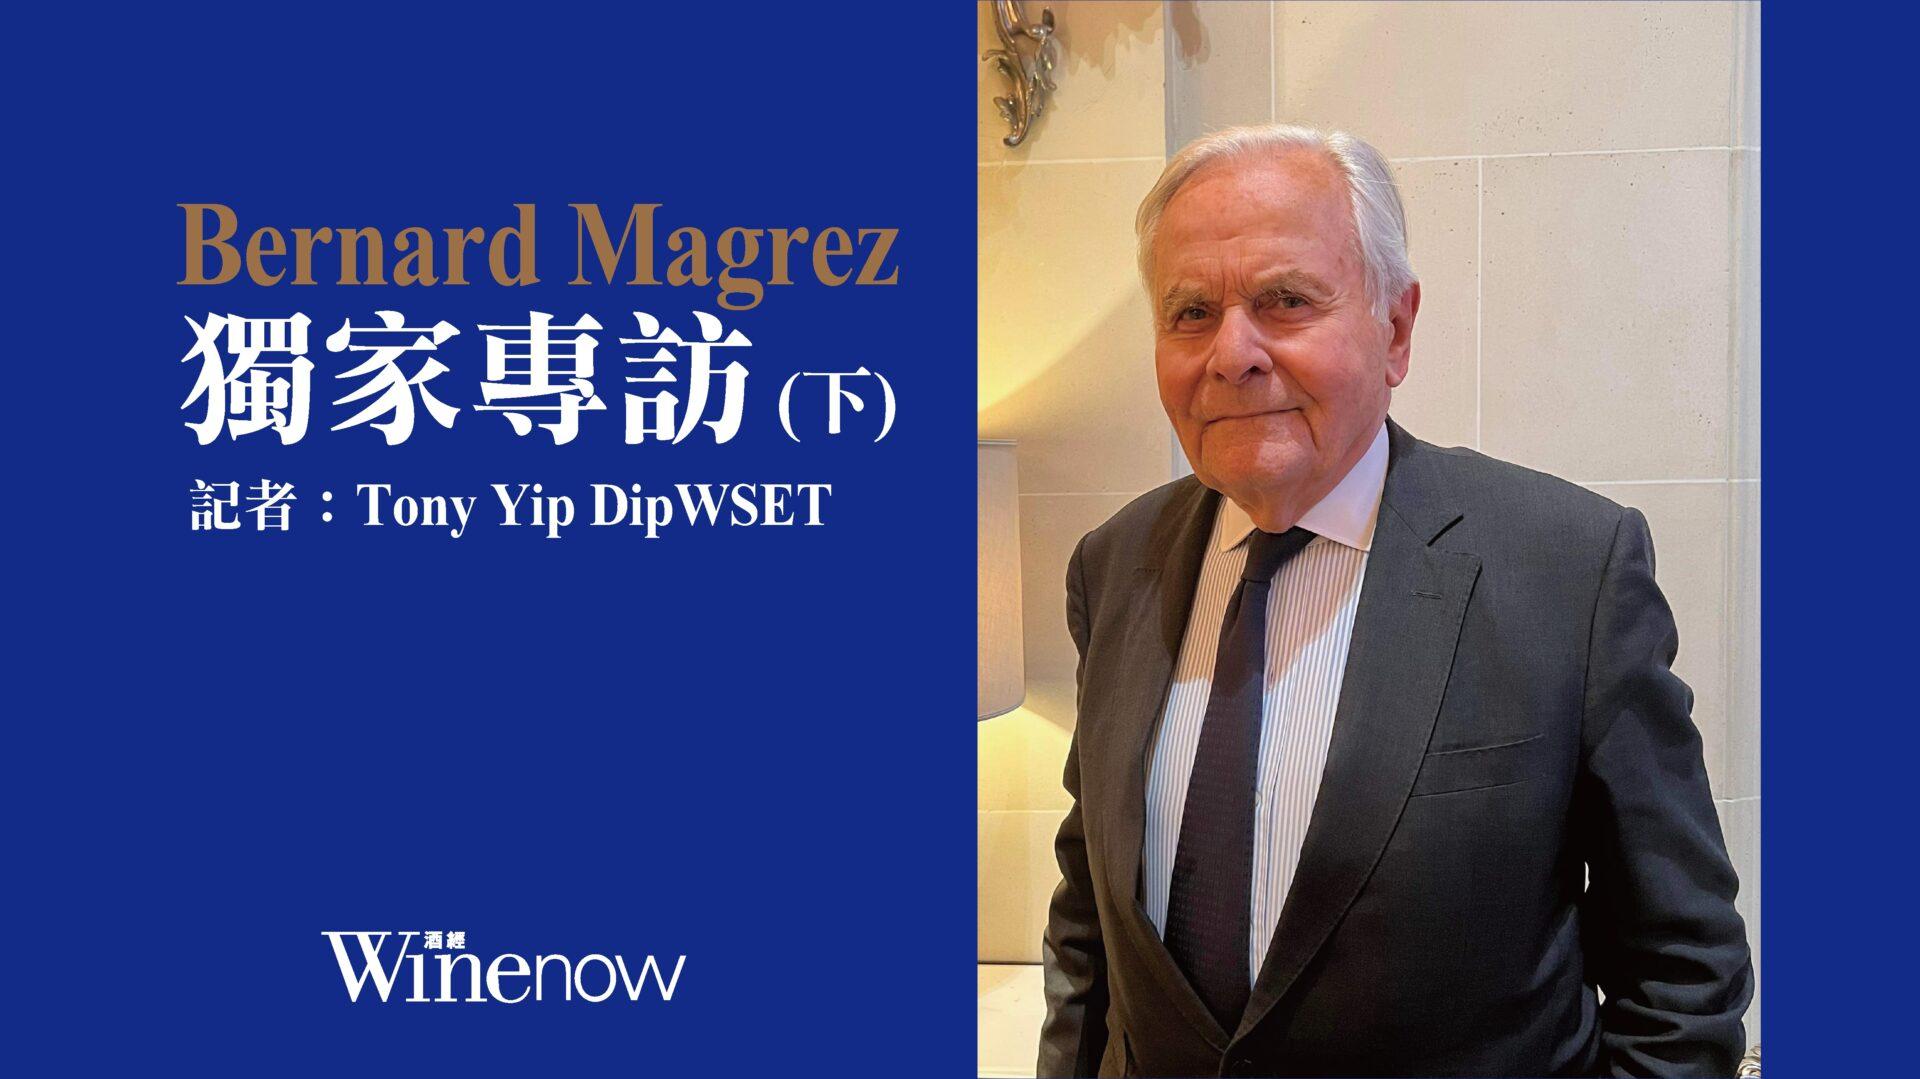 獨家專訪「雙金匙」酒業大亨 Bernard Magrez (下) - WineNow HK 專欄文章